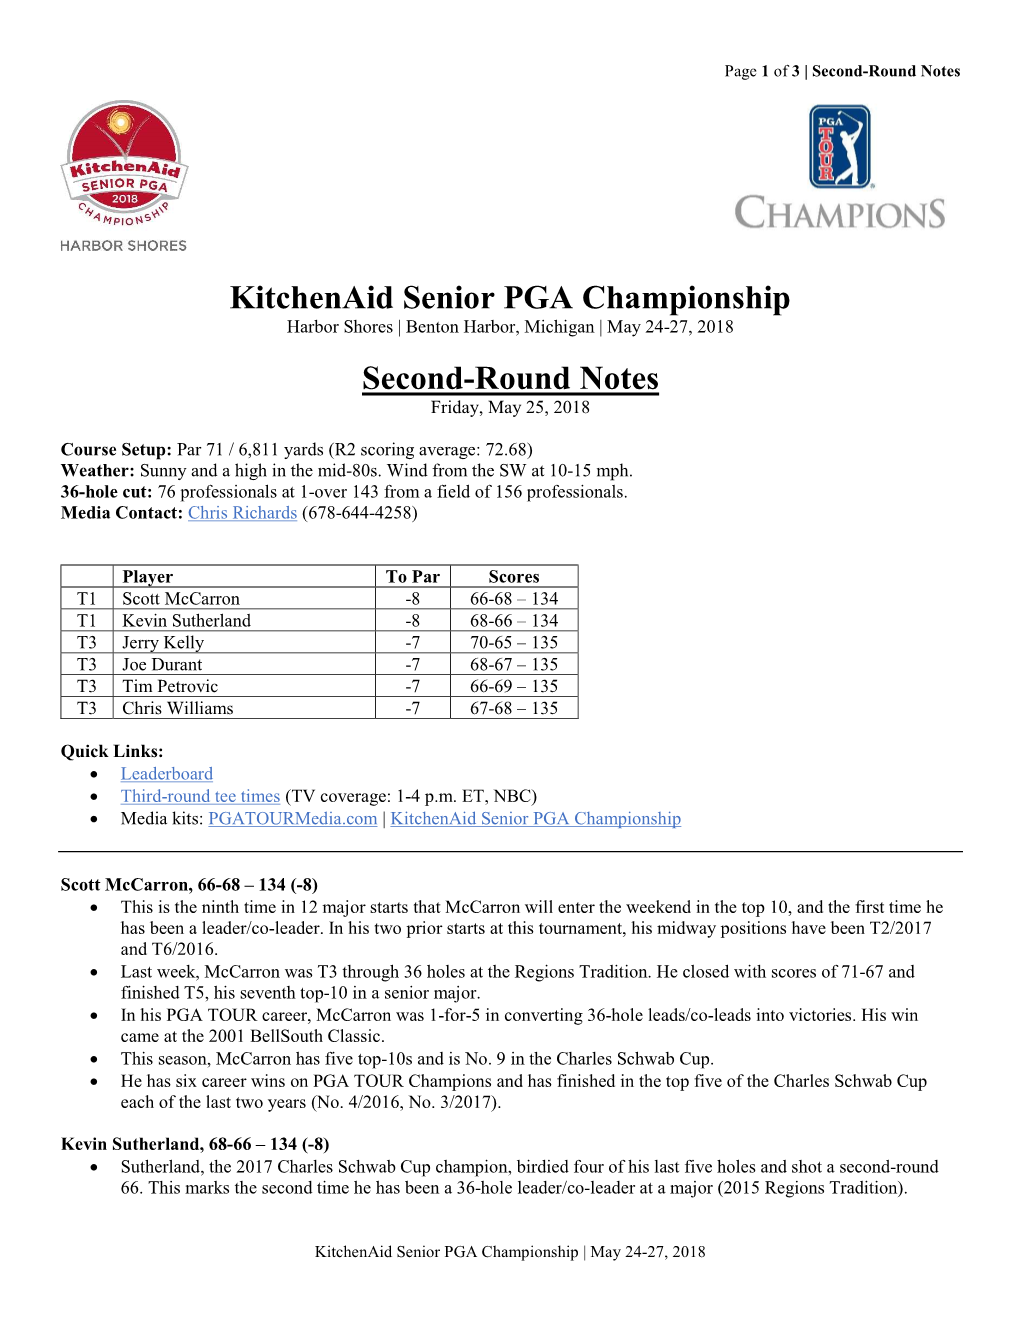 Kitchenaid Senior PGA Championship Second